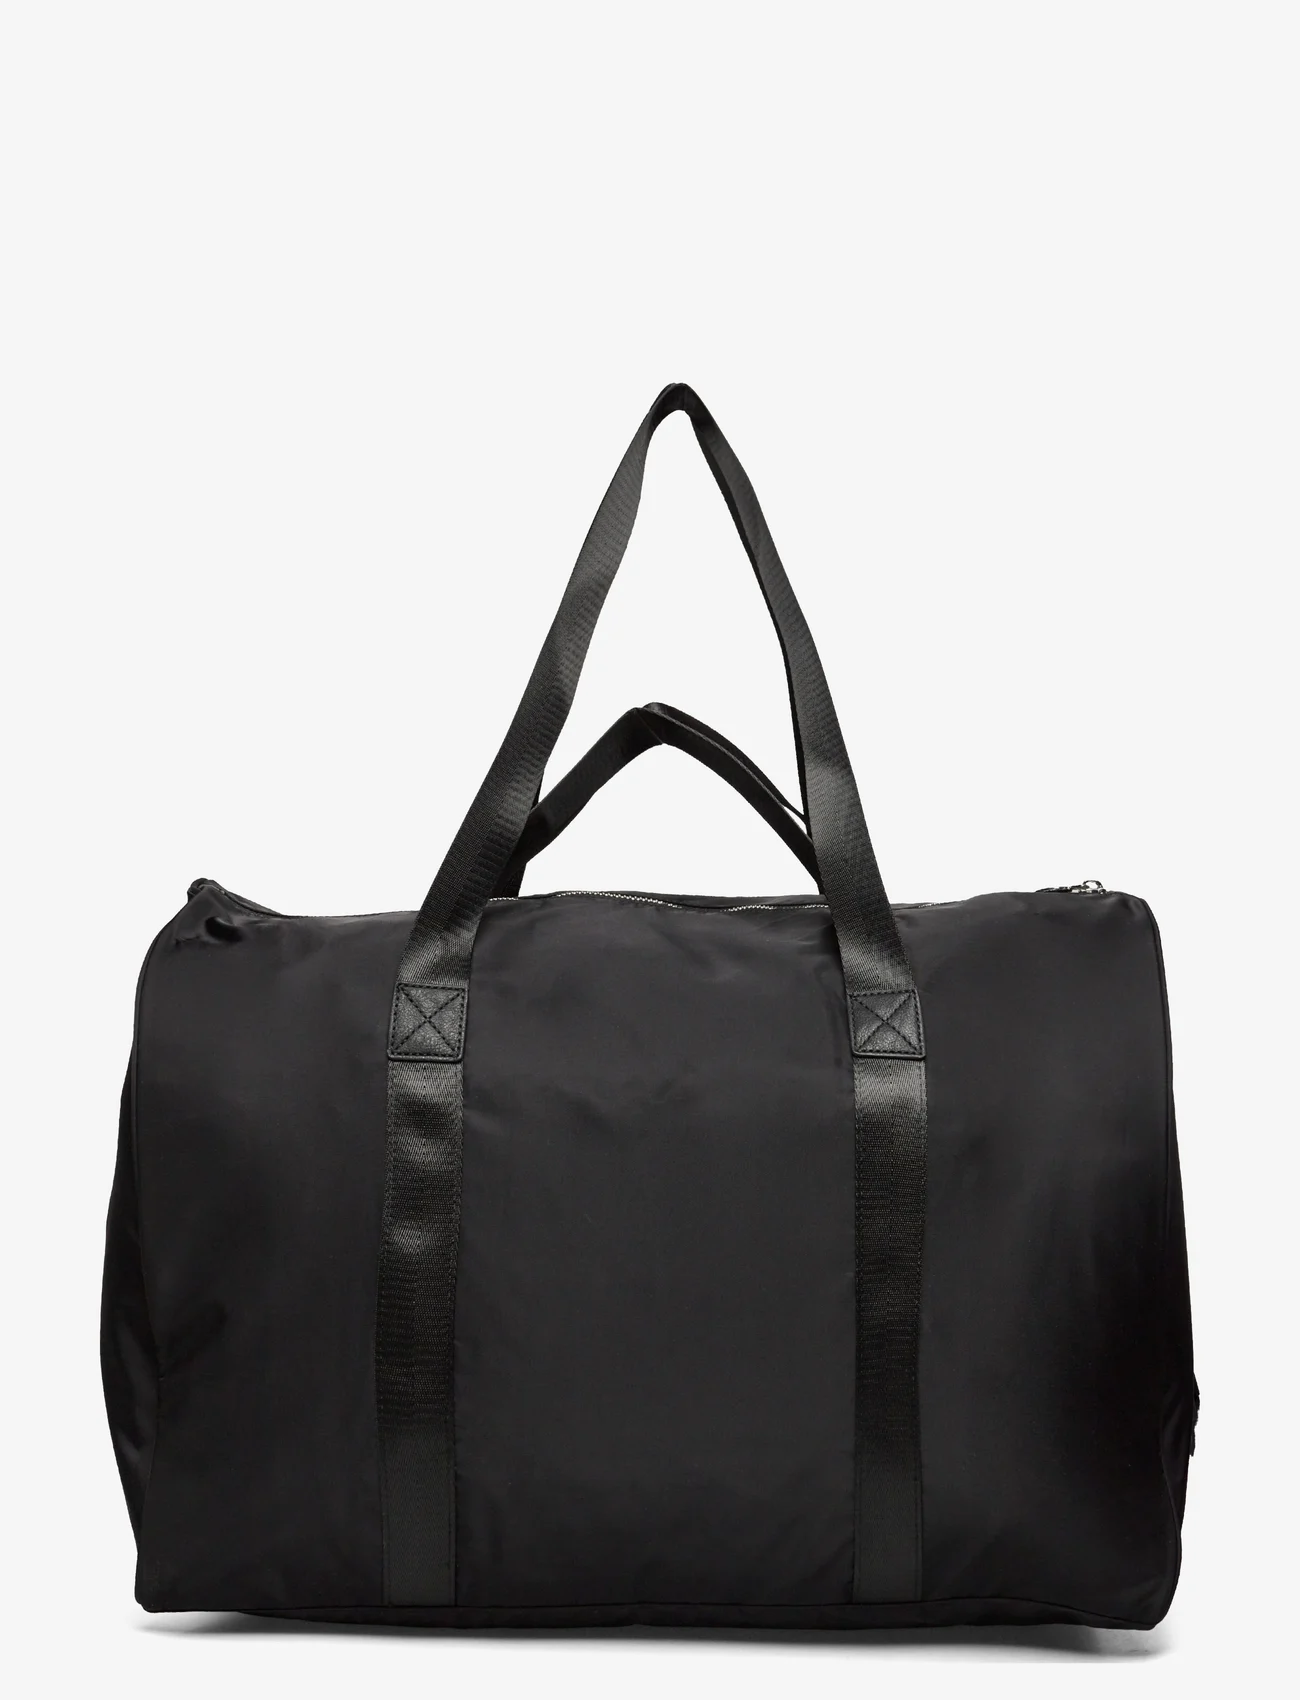 Rosemunde - Recycled weekend bag - weekendtassen - black silver - 1